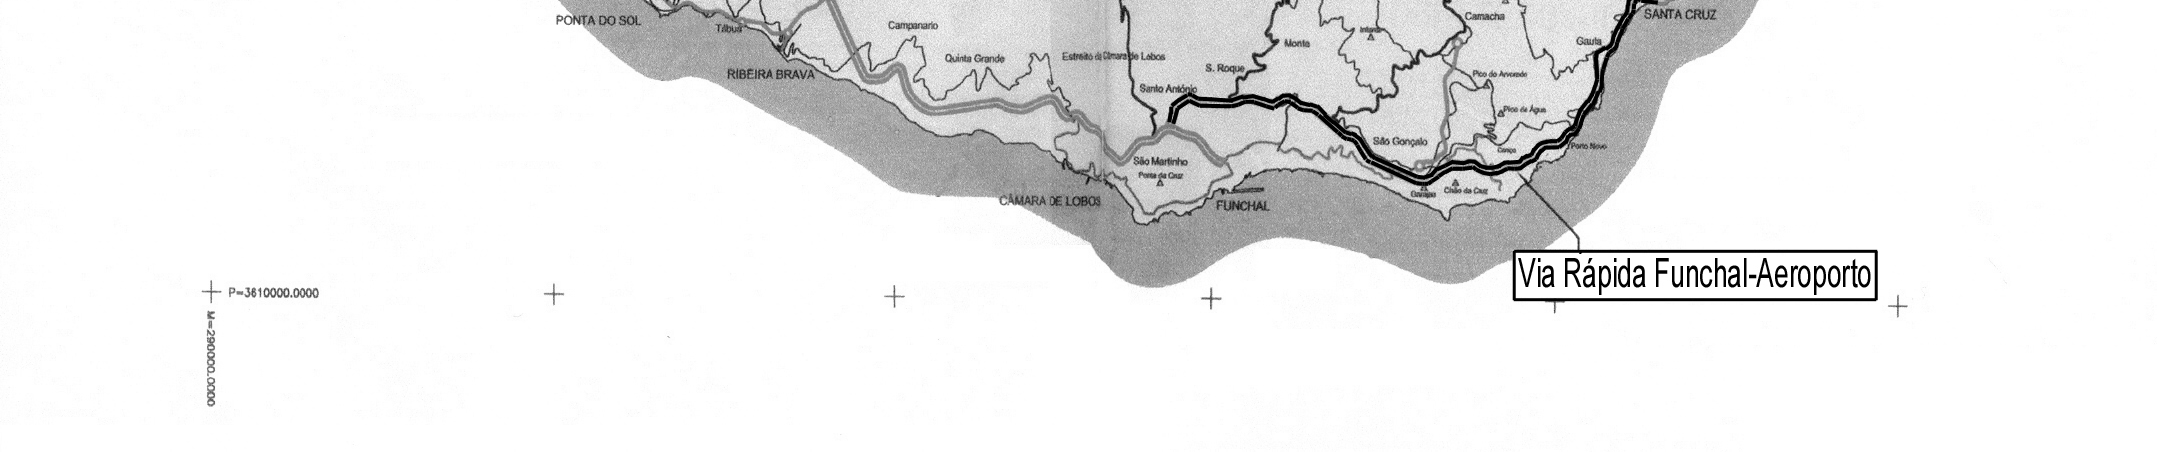 Santana, ambas localizadas a norte da ilha. Os traçados, em via simples com dois sentidos, apresentam uma extensão total aproximada de 20 km.